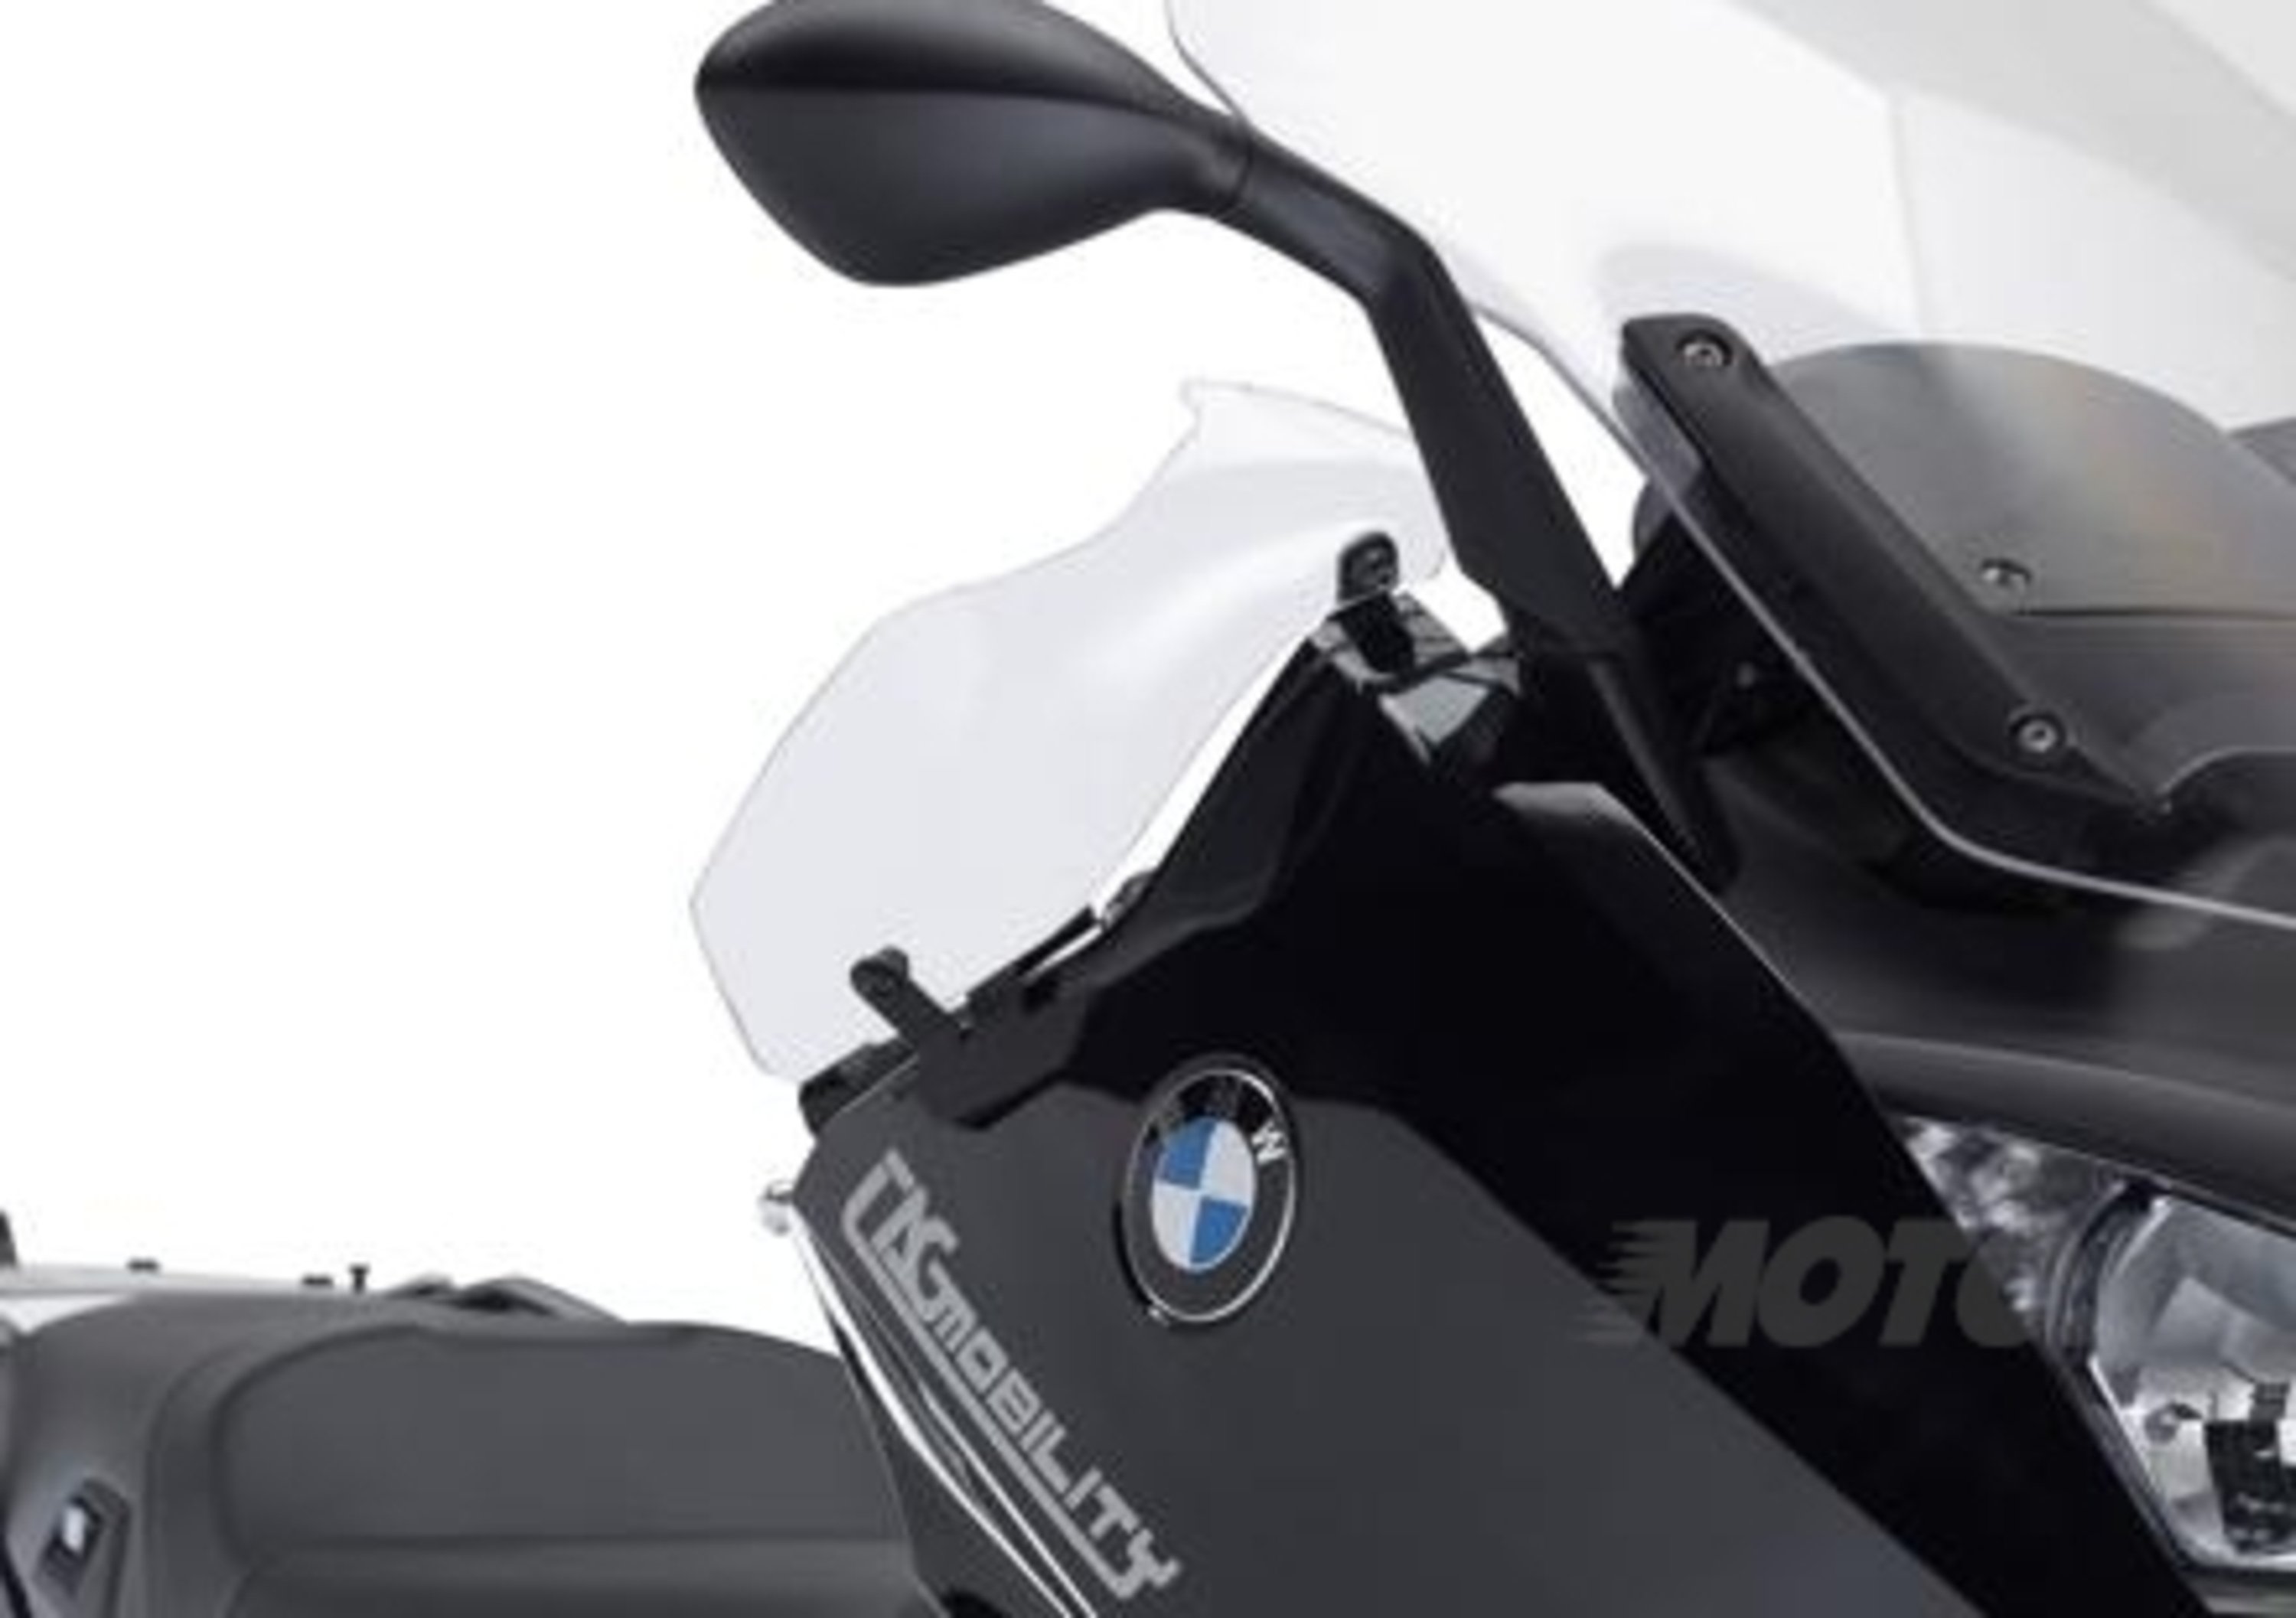 Kit GIVI per gli scooter BMW C 600 Sport e C 650 GT